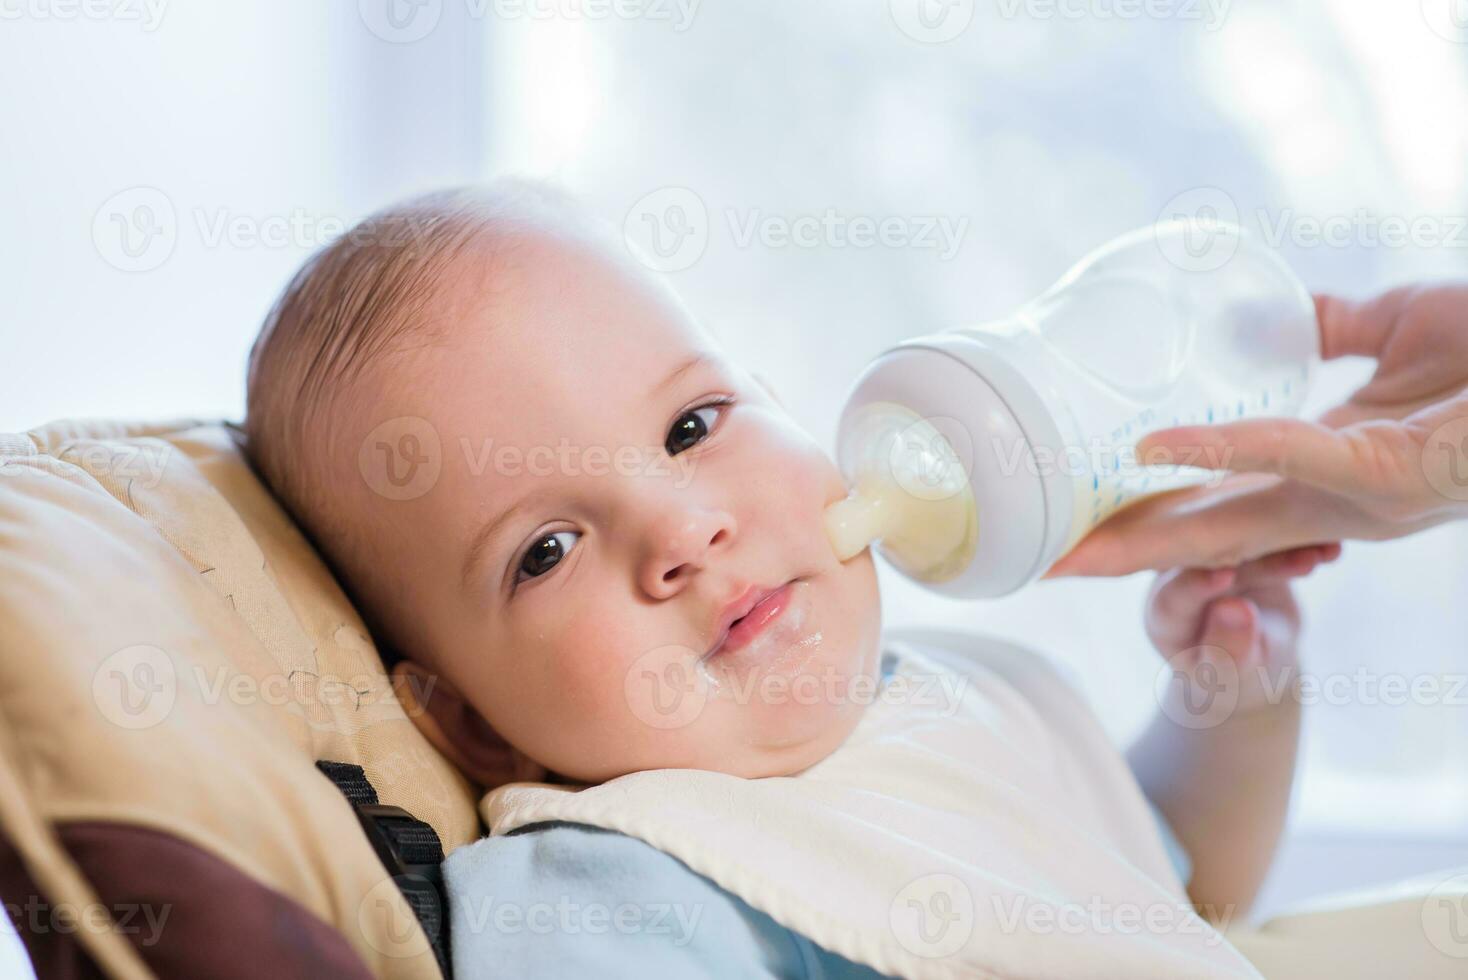 mãe feeds bebê a partir de uma garrafa do leite foto